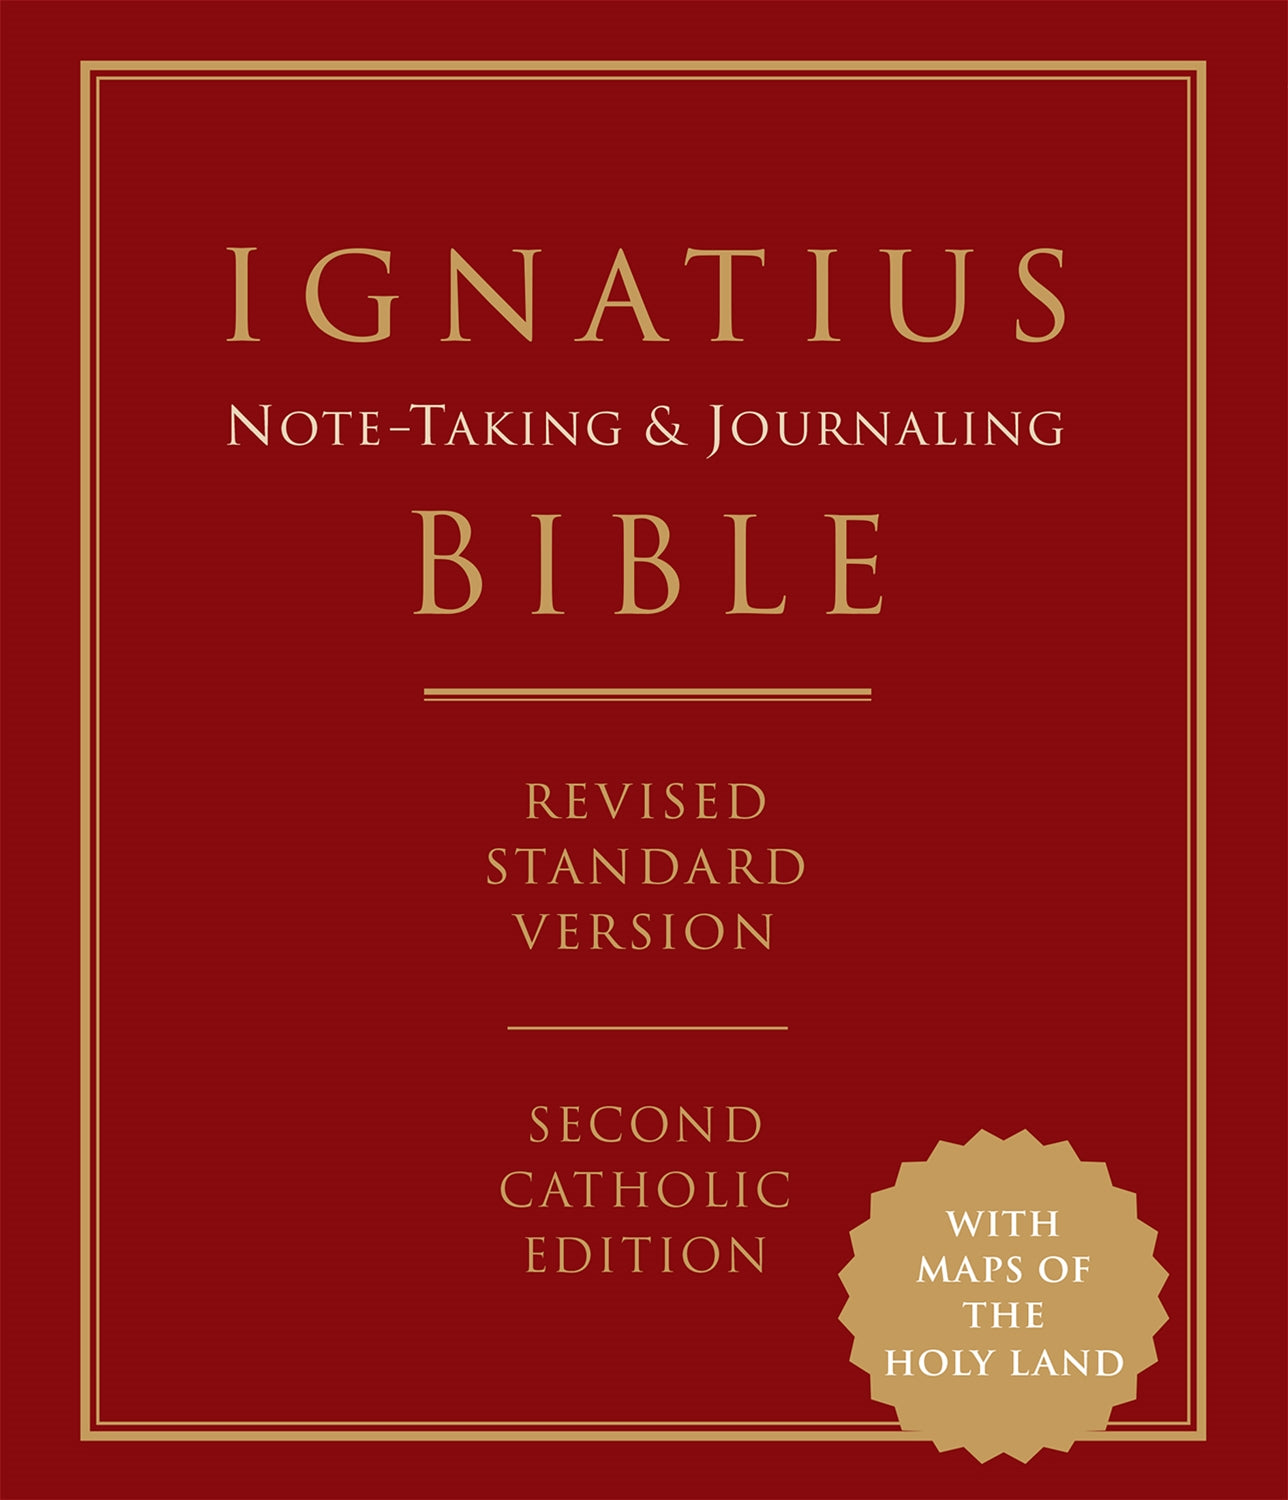 Biblia de Ignacio para llevar un diario y tomar notas: versión estándar revisada, segunda edición católica 